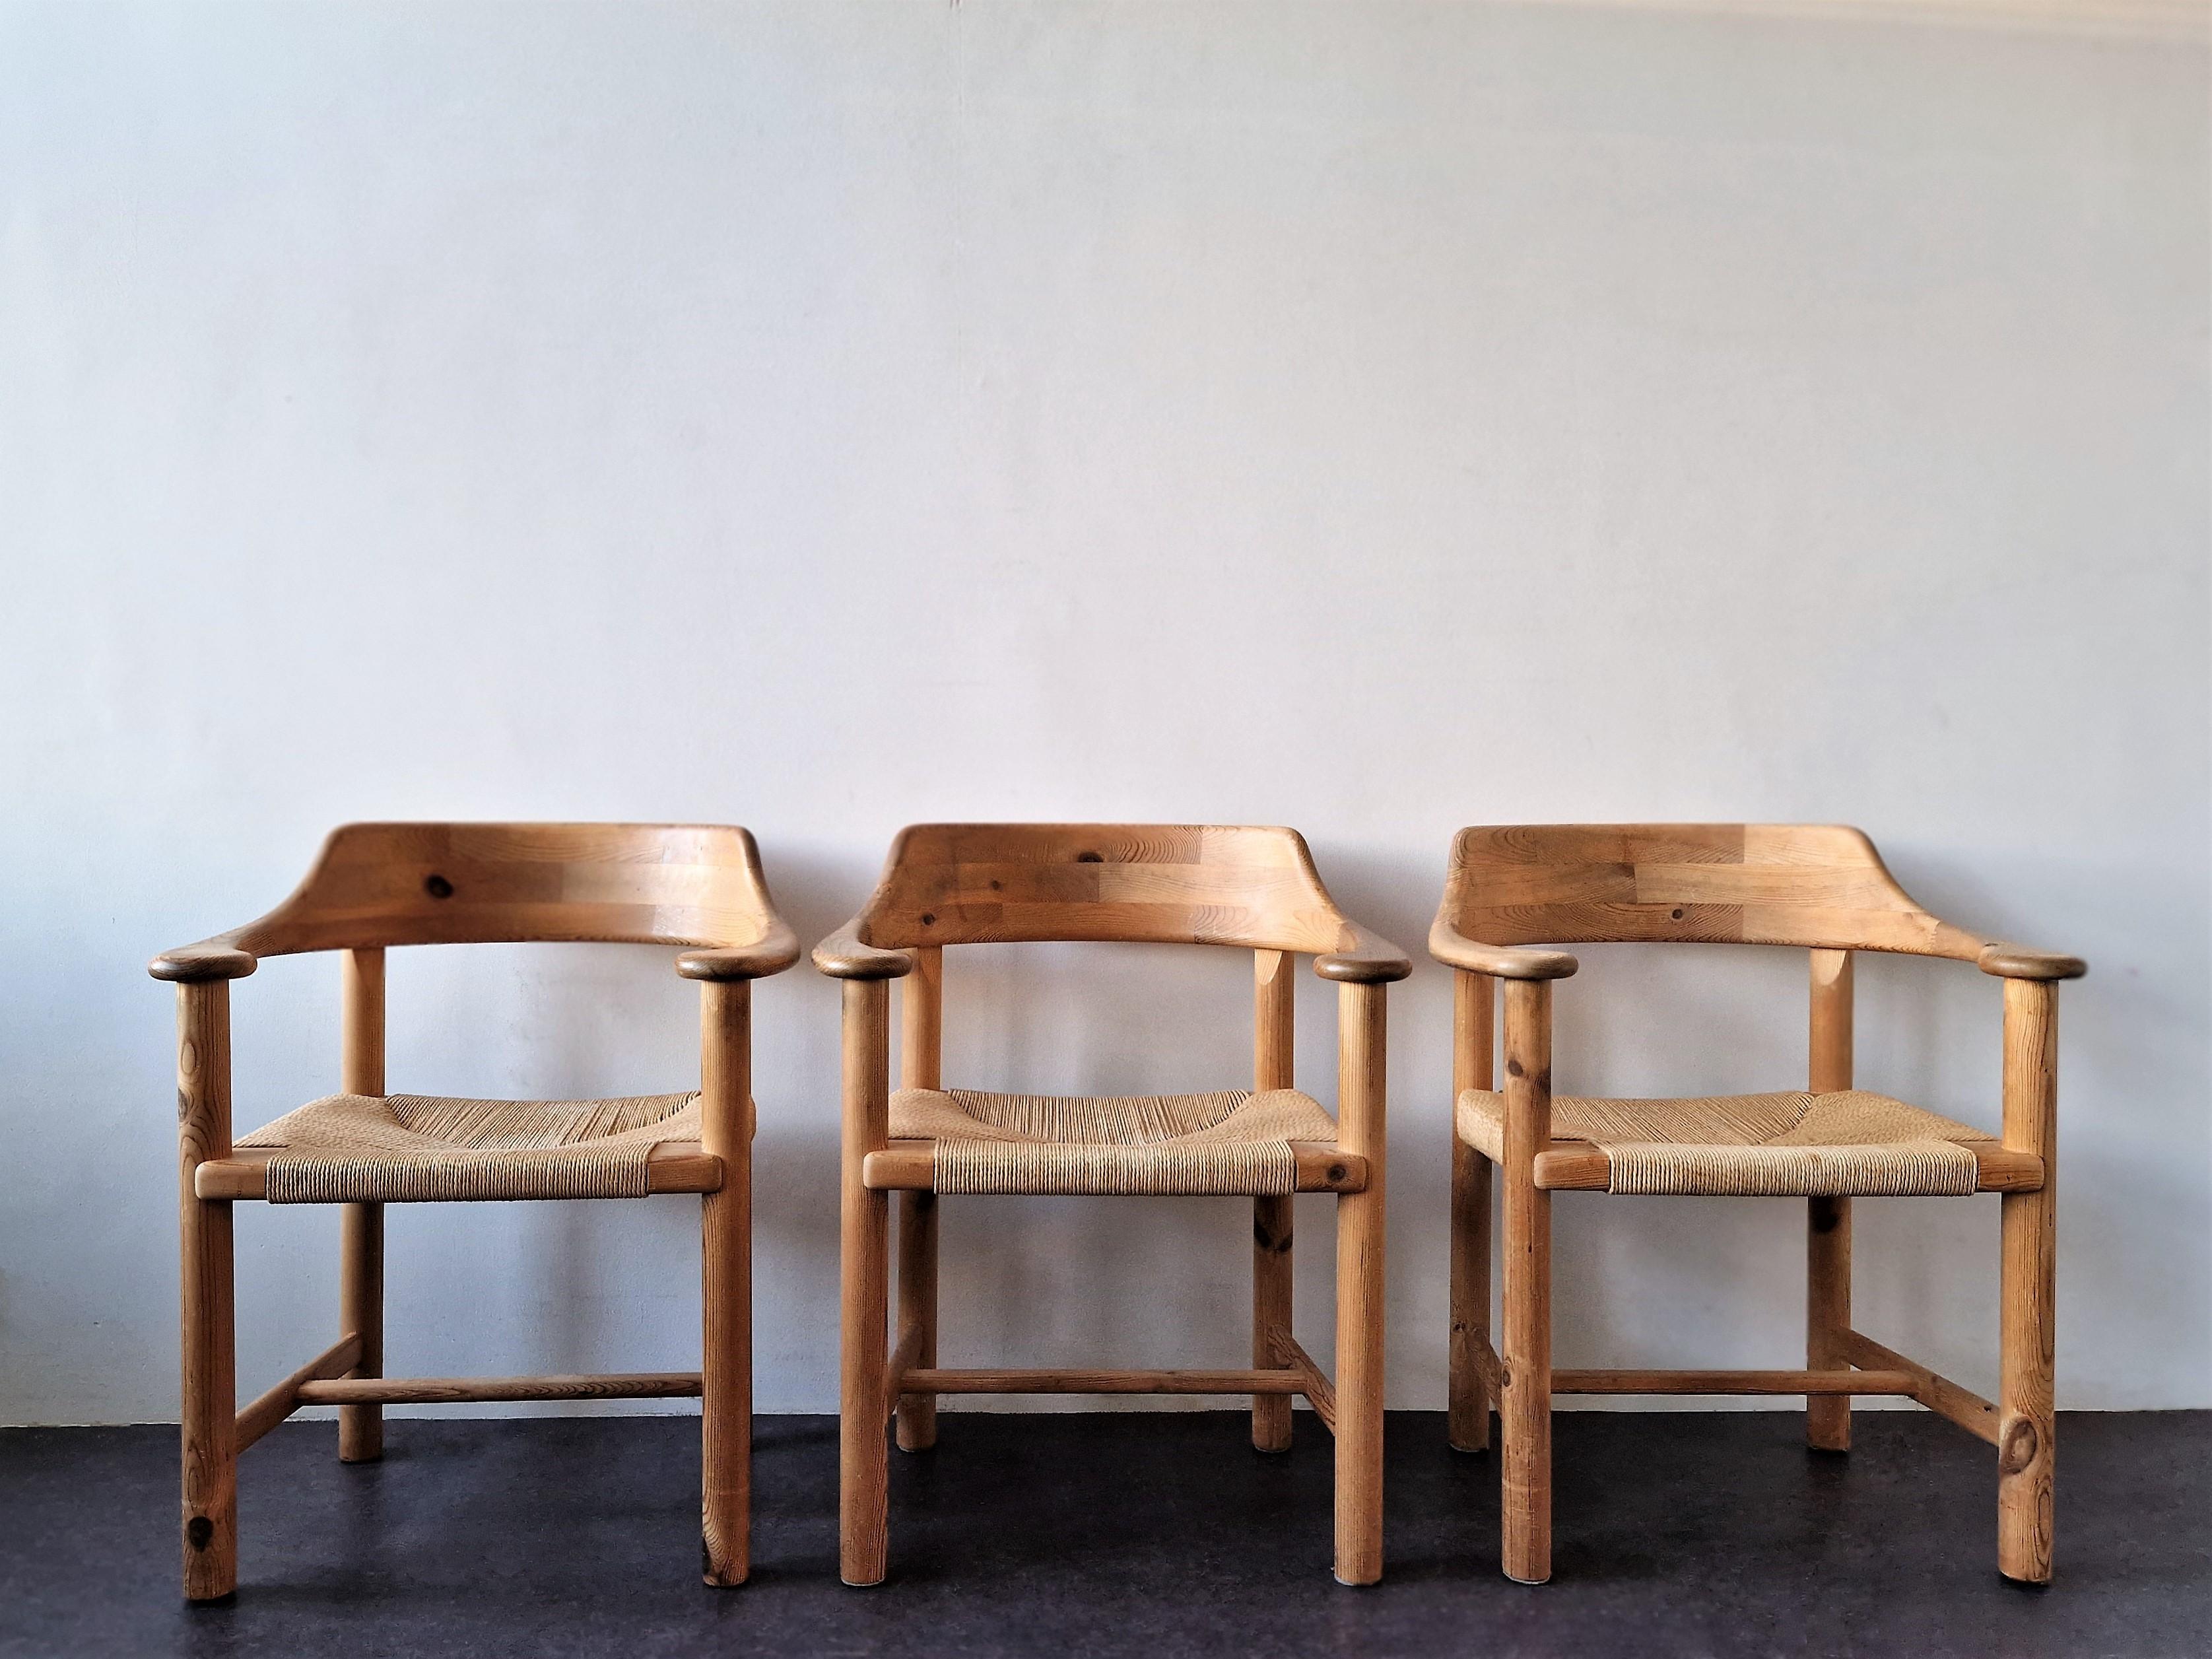 Ces fauteuils élégants et intemporels ont été conçus pour Gramrode Møbelfabrik au Danemark. Ils sont fabriqués en bois de pin et ont des sièges en corde de papier. Leurs belles formes rondes en font un régal pour les yeux. Leur aspect naturel leur